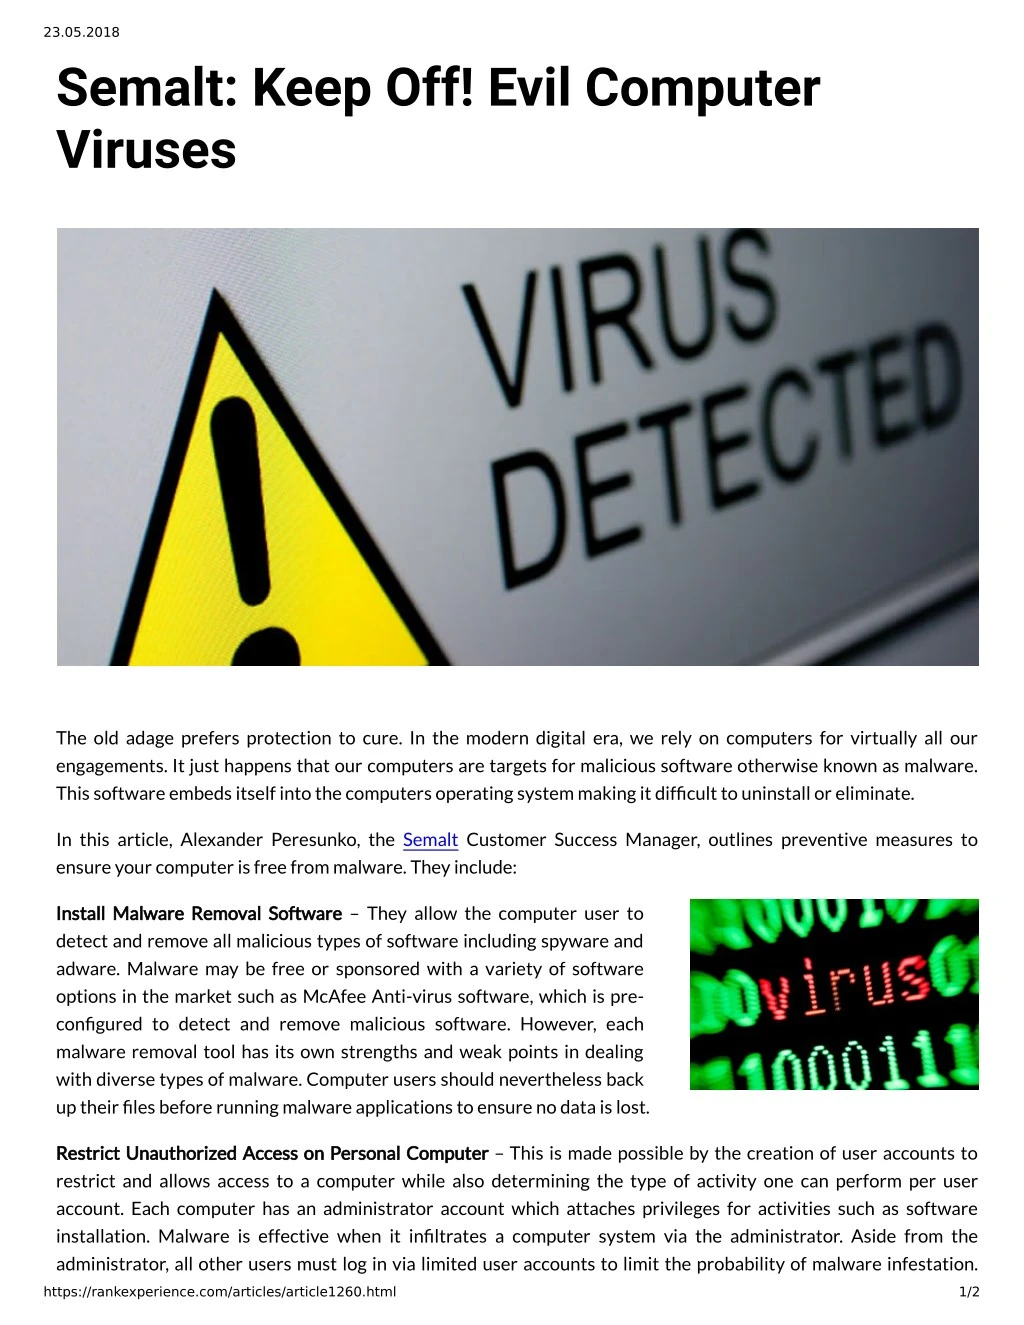 23 05 2018 semalt keep off evil computer viruses